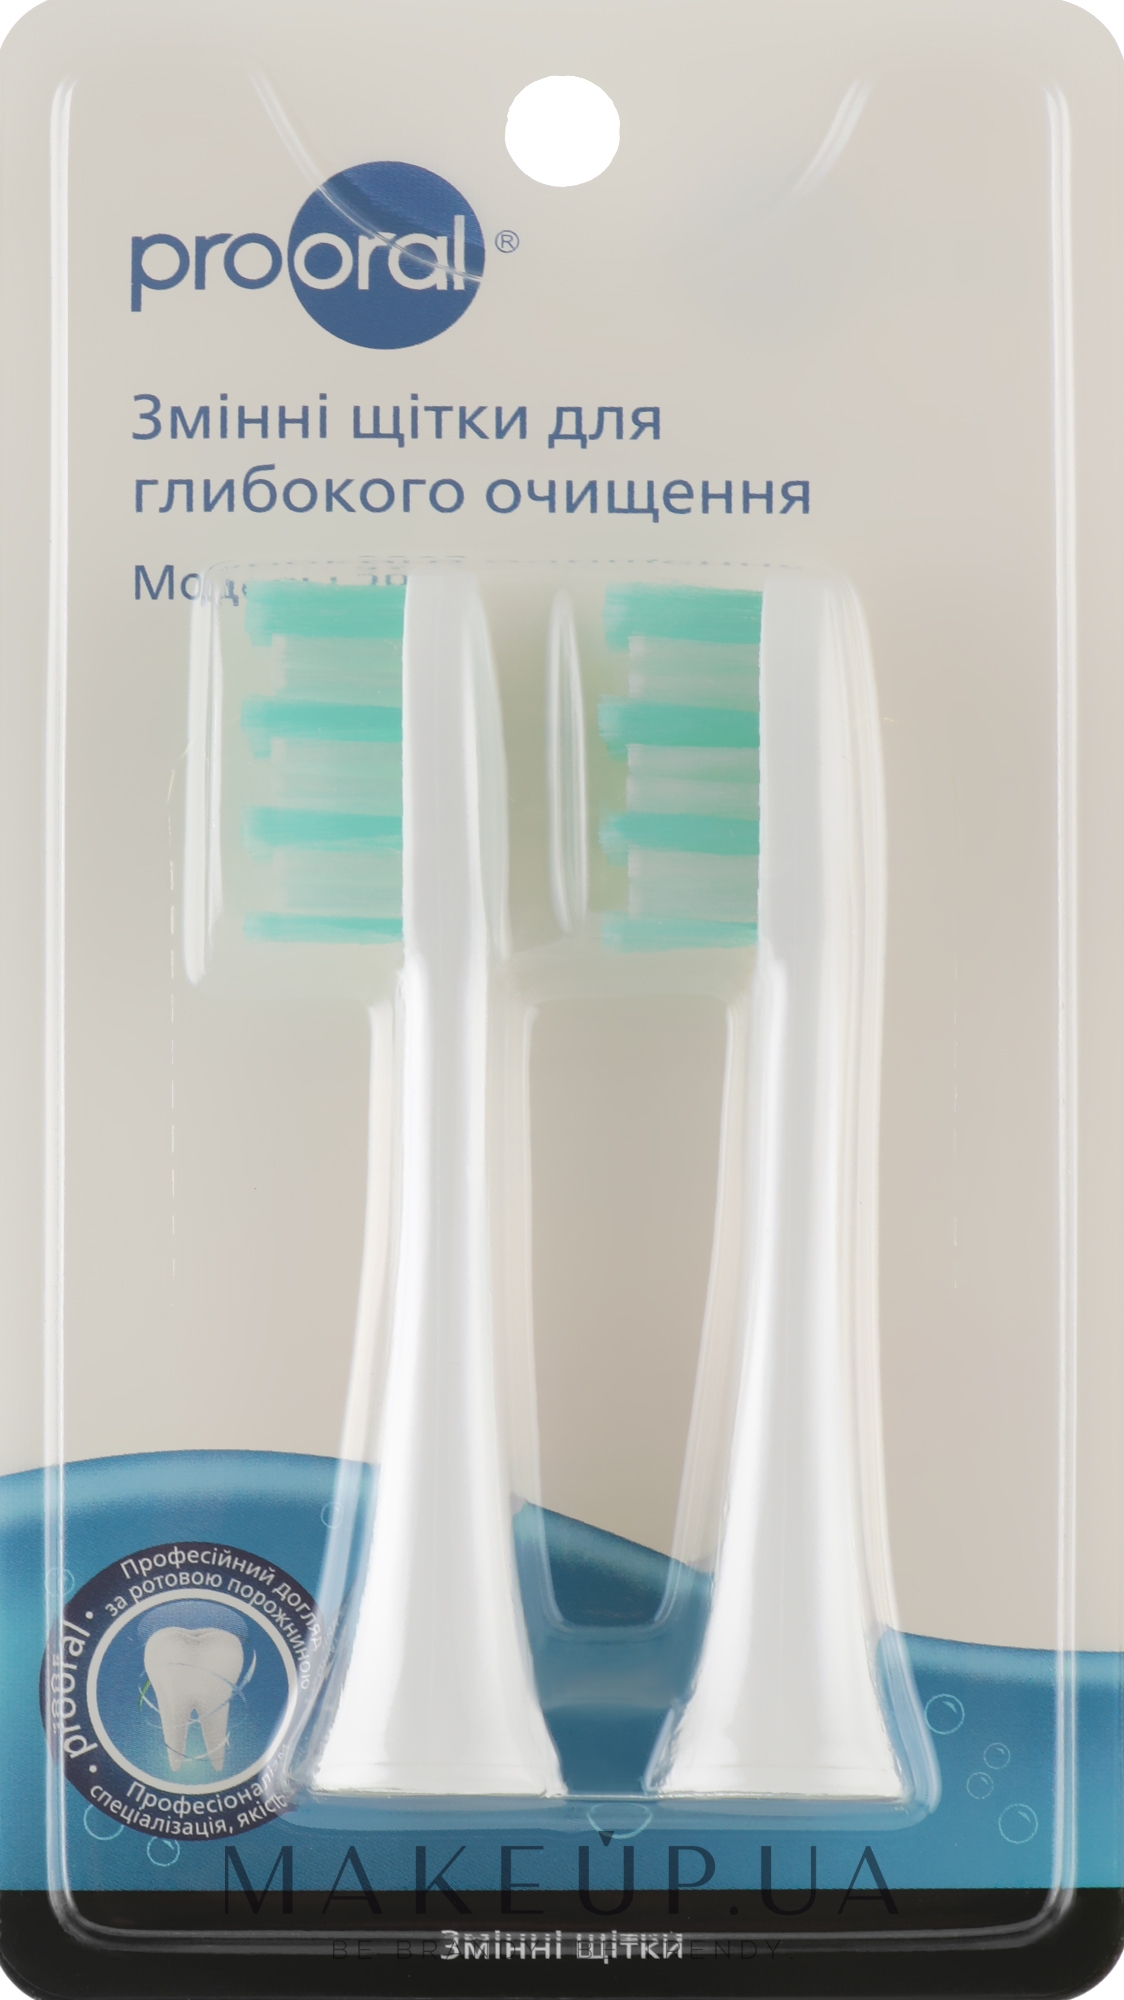 Щітки для глибокого очищення, для звукової зубної щітки T09 - Prooral — фото 2шт